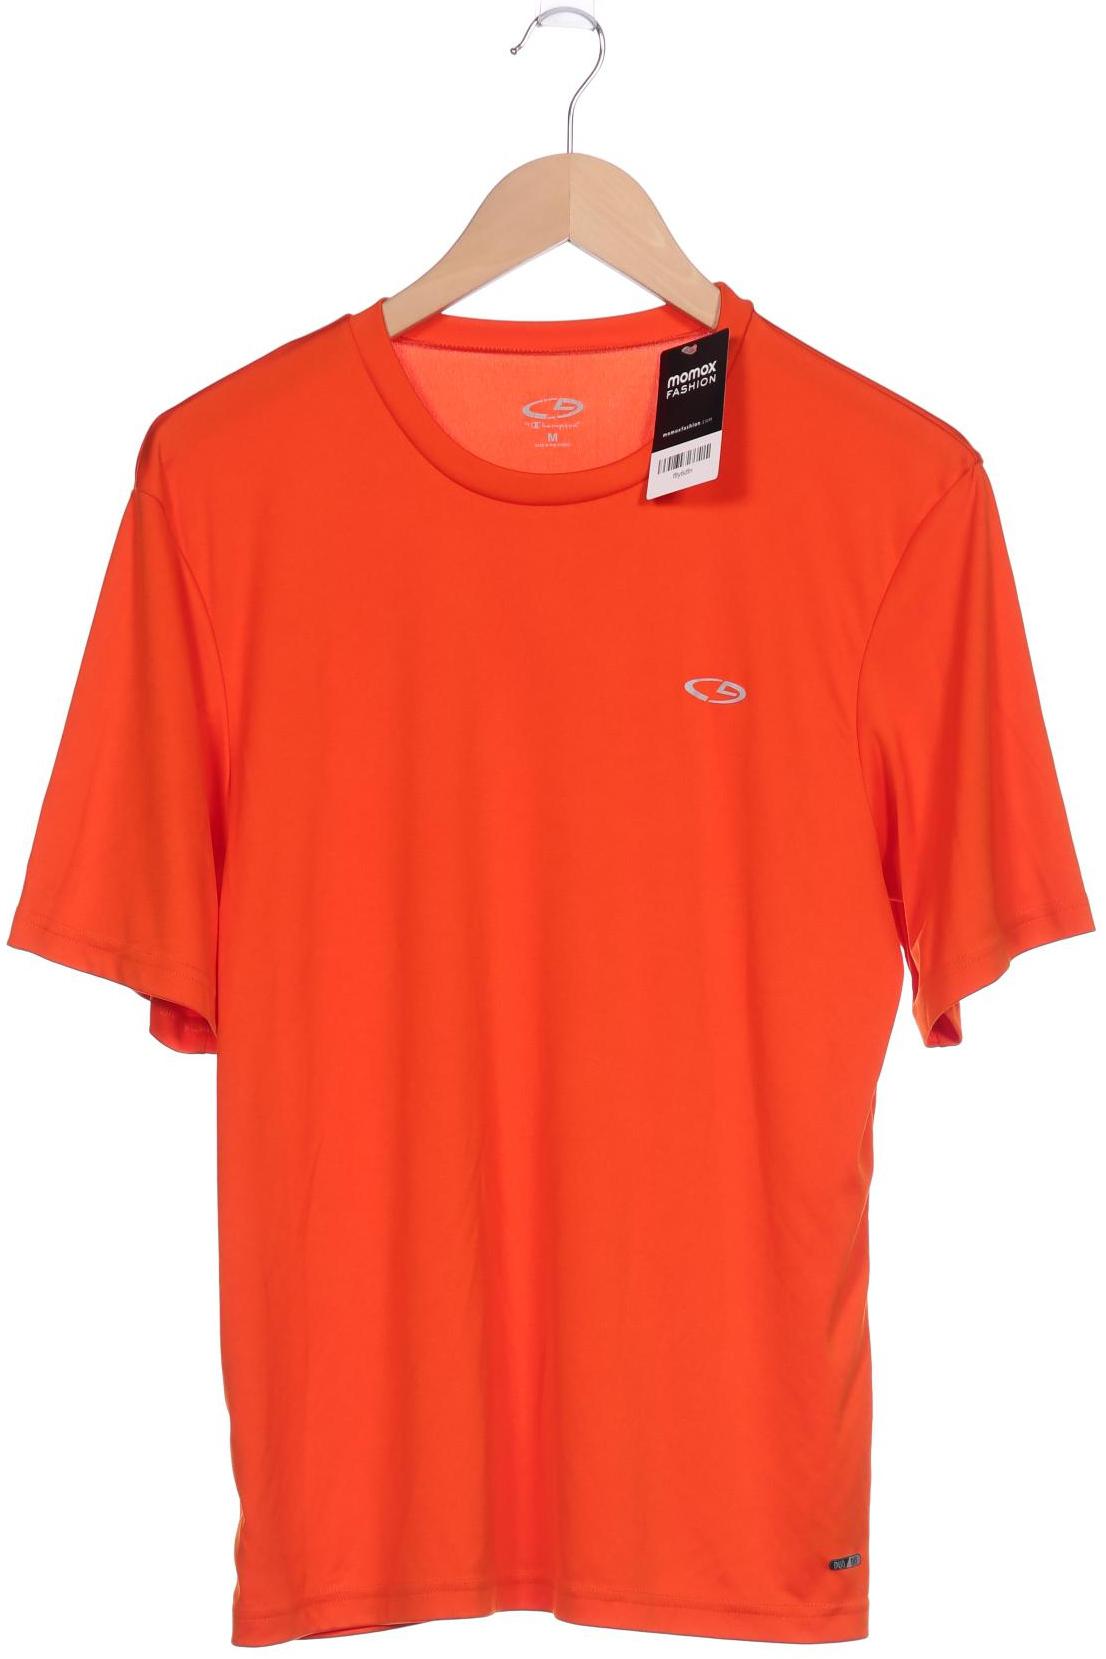 Champion Herren T-Shirt, orange, Gr. 48 von Champion